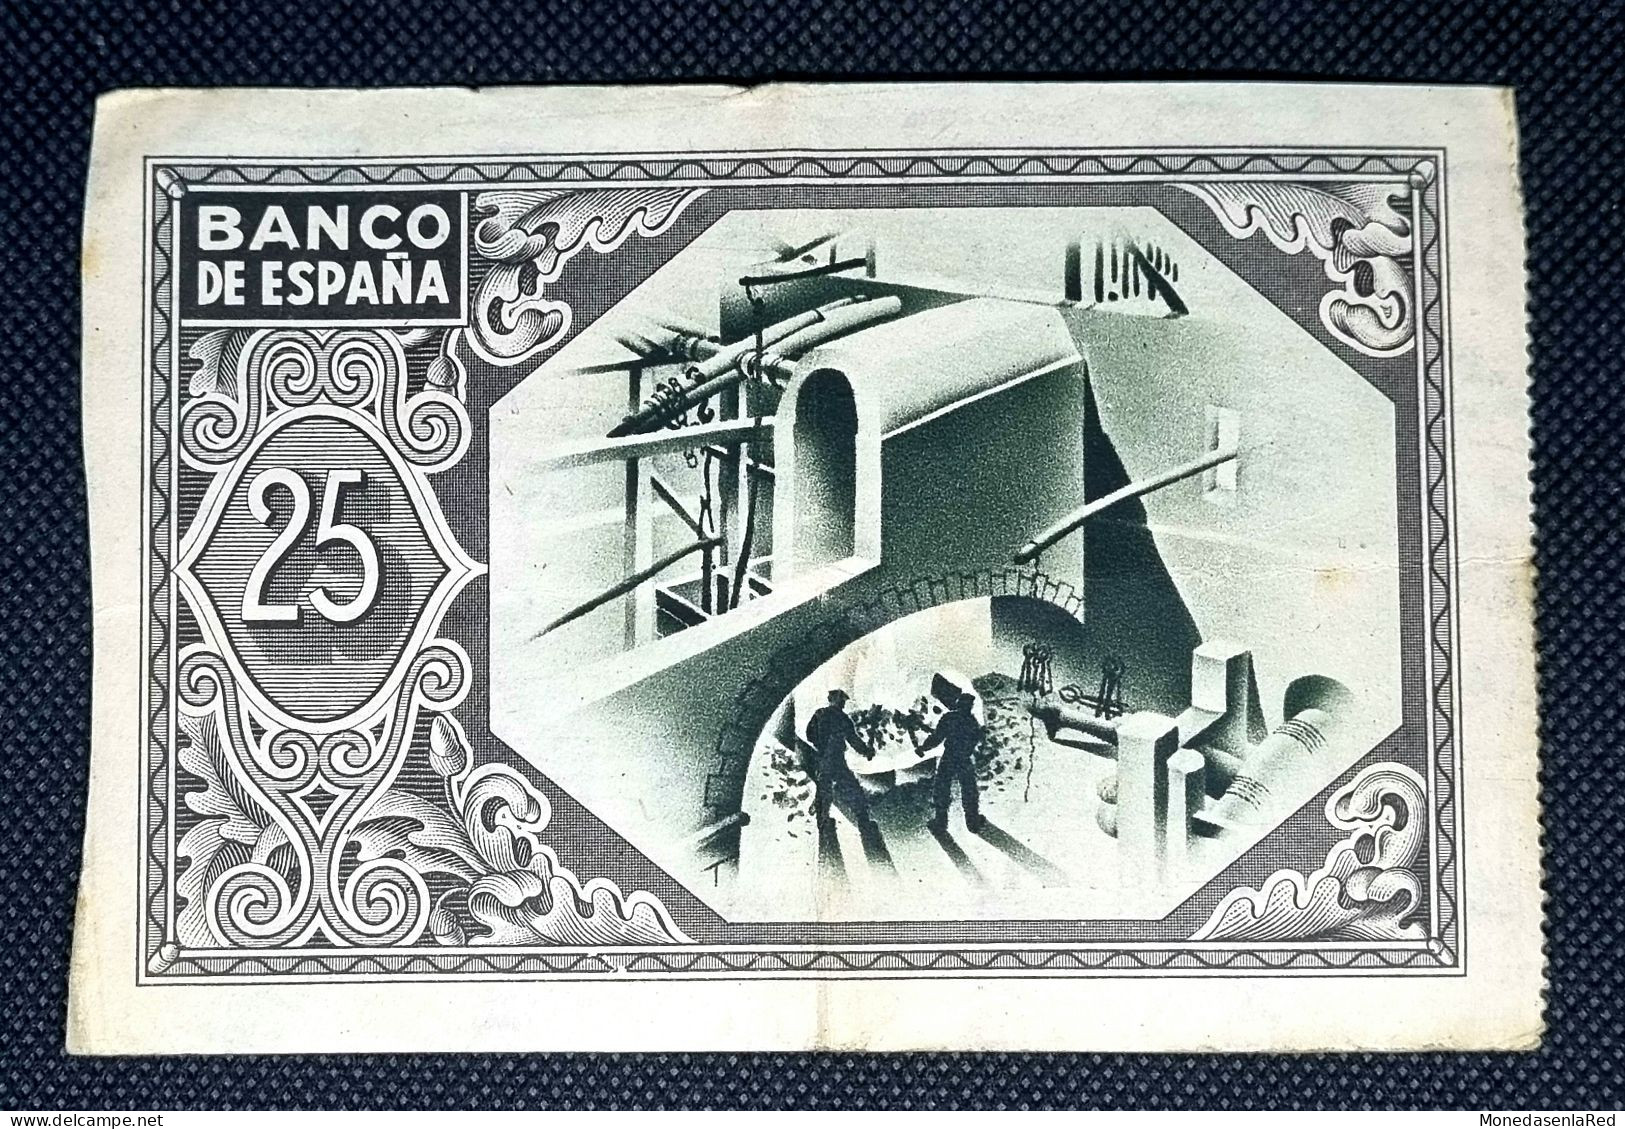 ESPAÑA 25 PESETAS 1937 BILBAO / Caja De Ahorros Vizcaína - 25 Pesetas